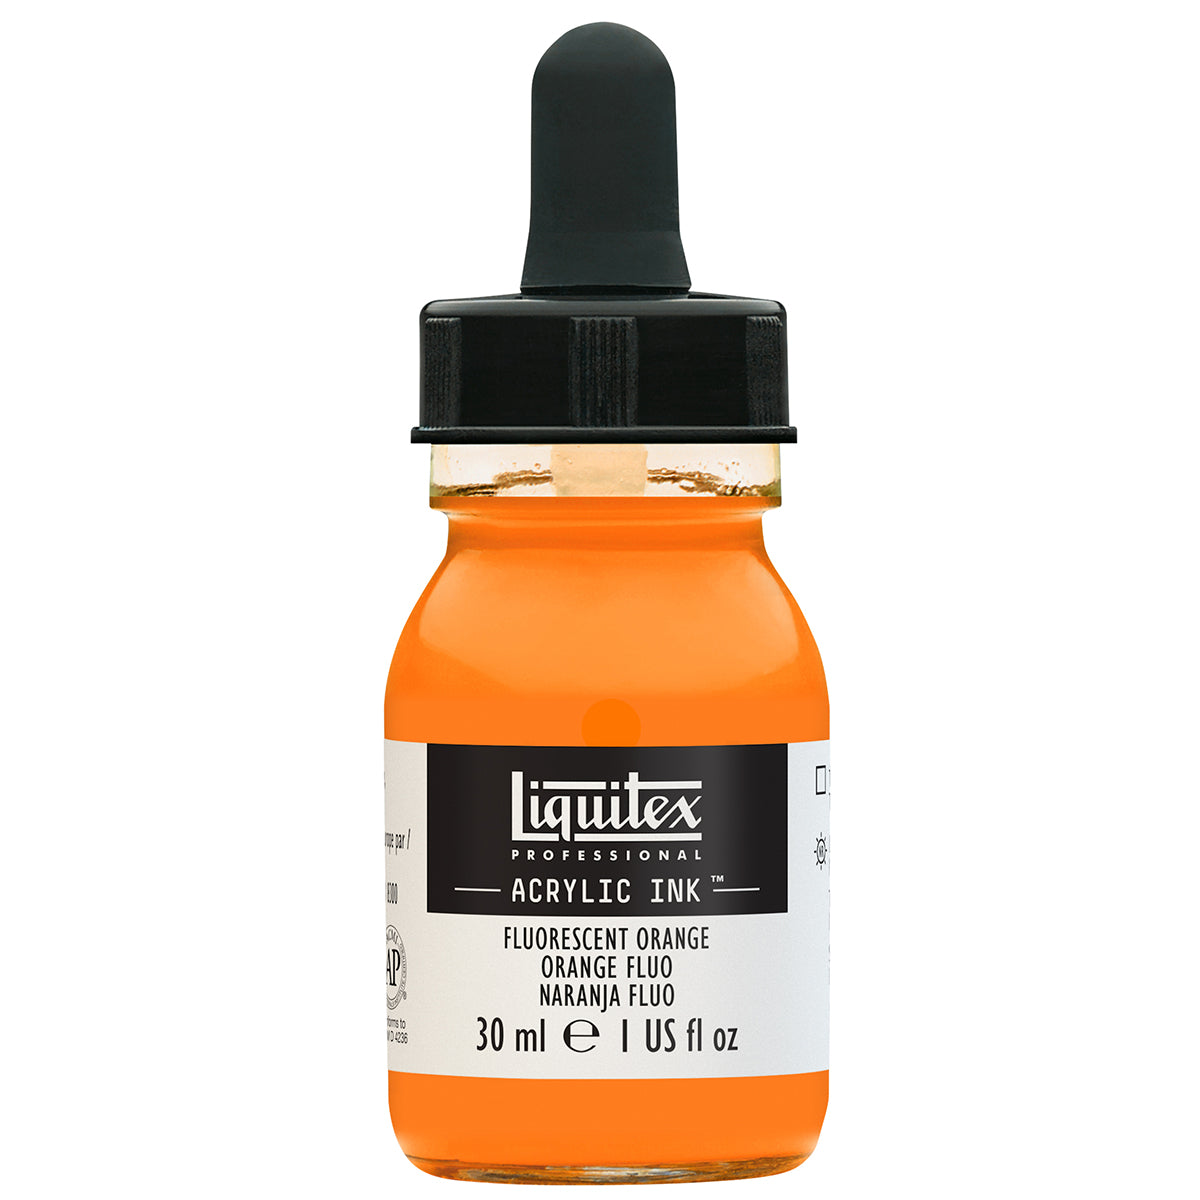 Liquitex-inchiostro acrilico-30ml arancio fluorescente